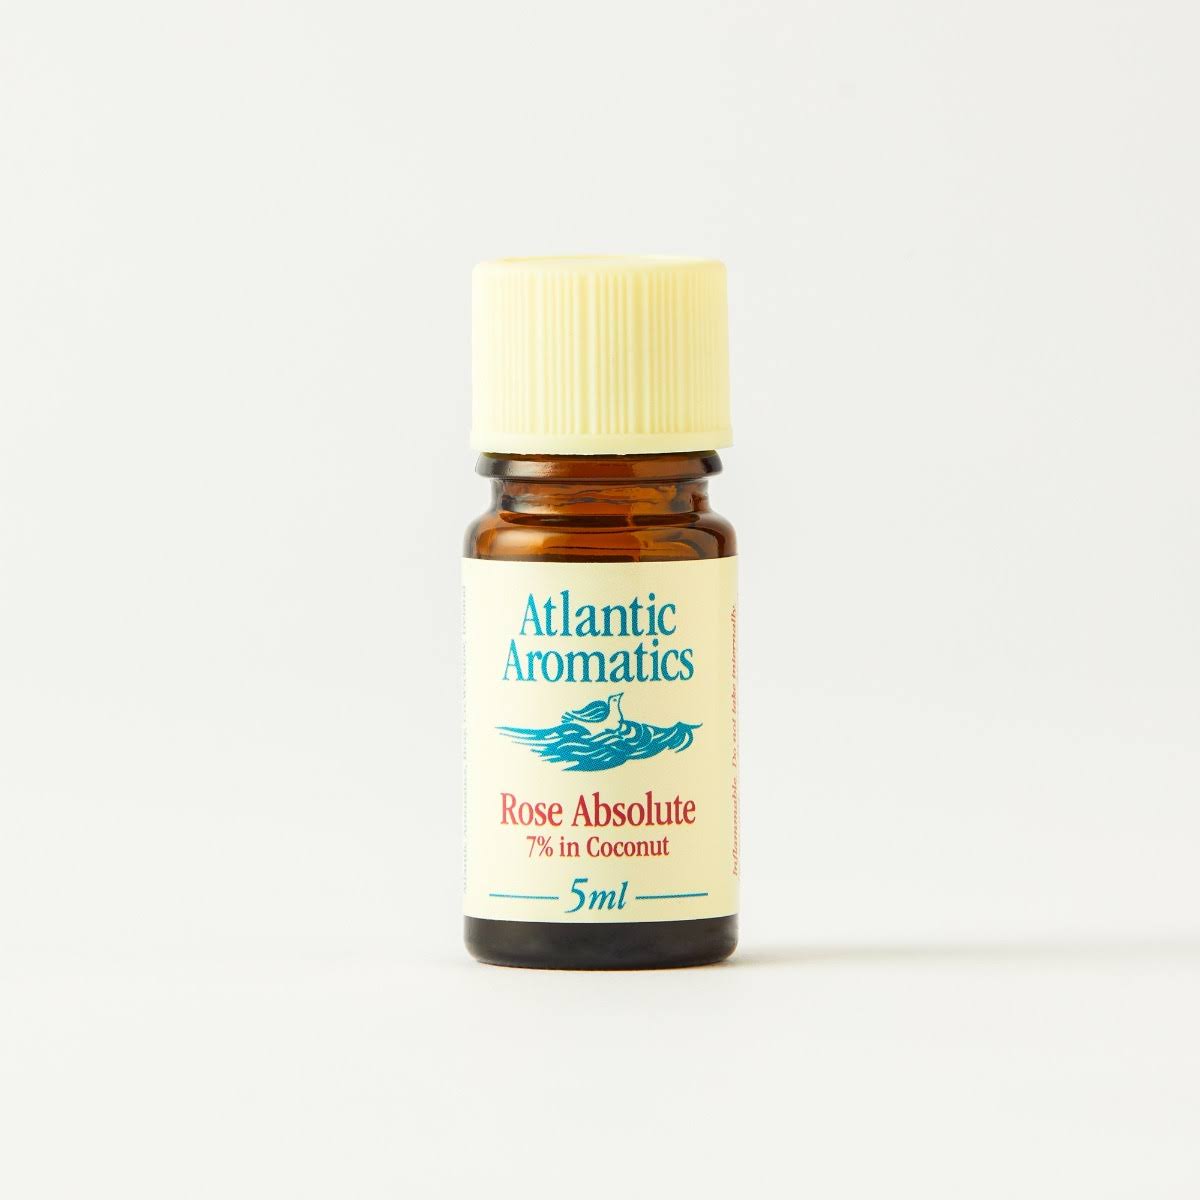 Atlantic Aromatics - Rose Absolute in 7% Coconut Oil | 5ml